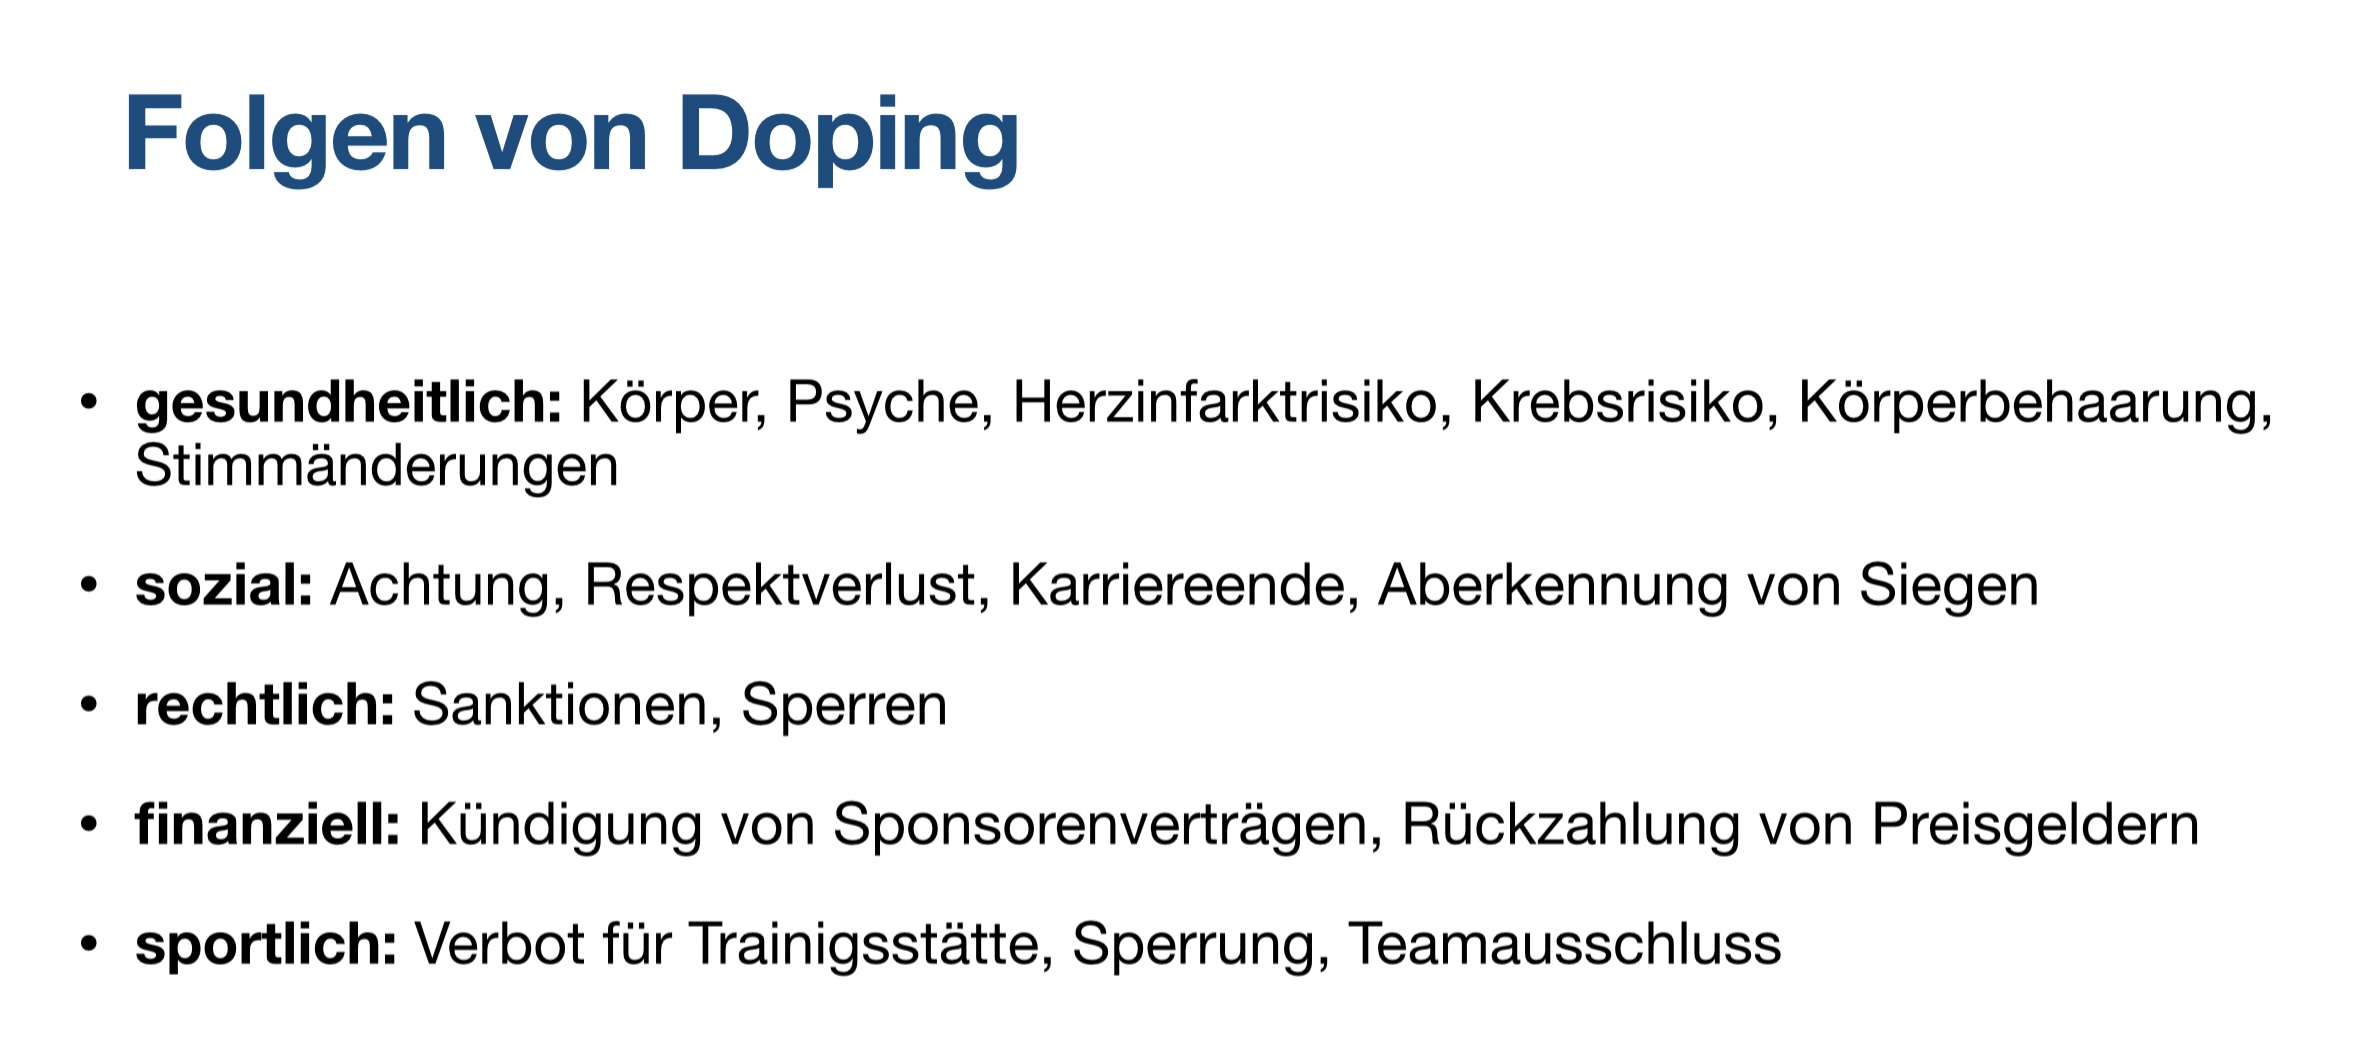 Folgen von Doping